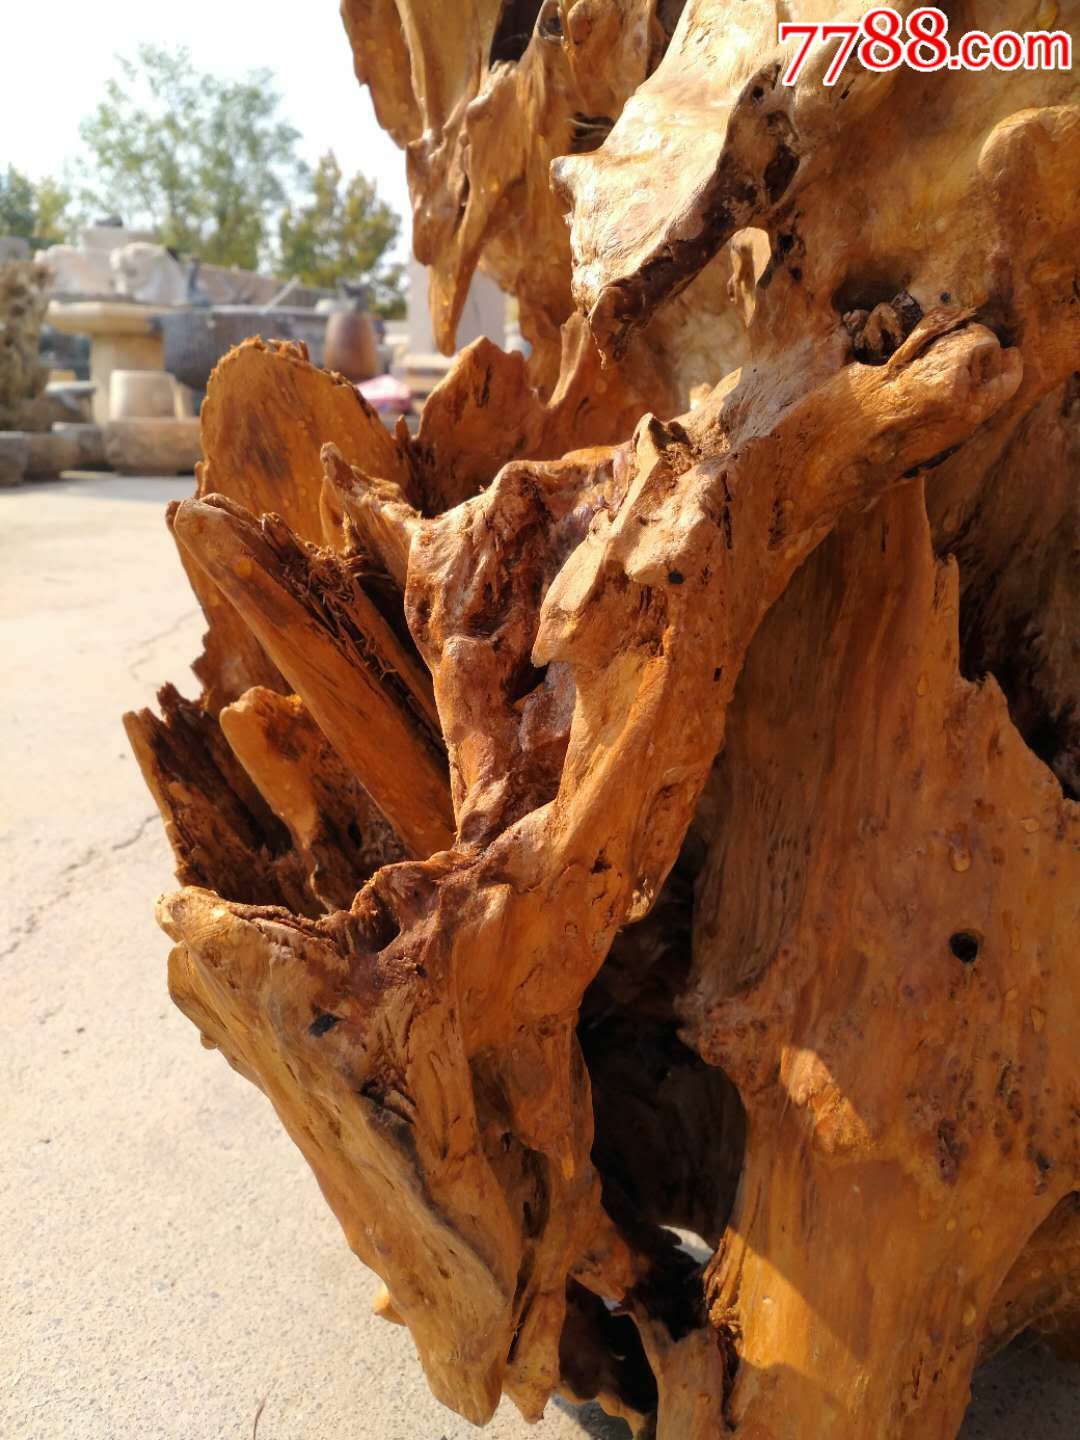 新疆胡杨木,根雕,千年不腐烂,木质坚硬,经过万年自然风化而成,欣赏